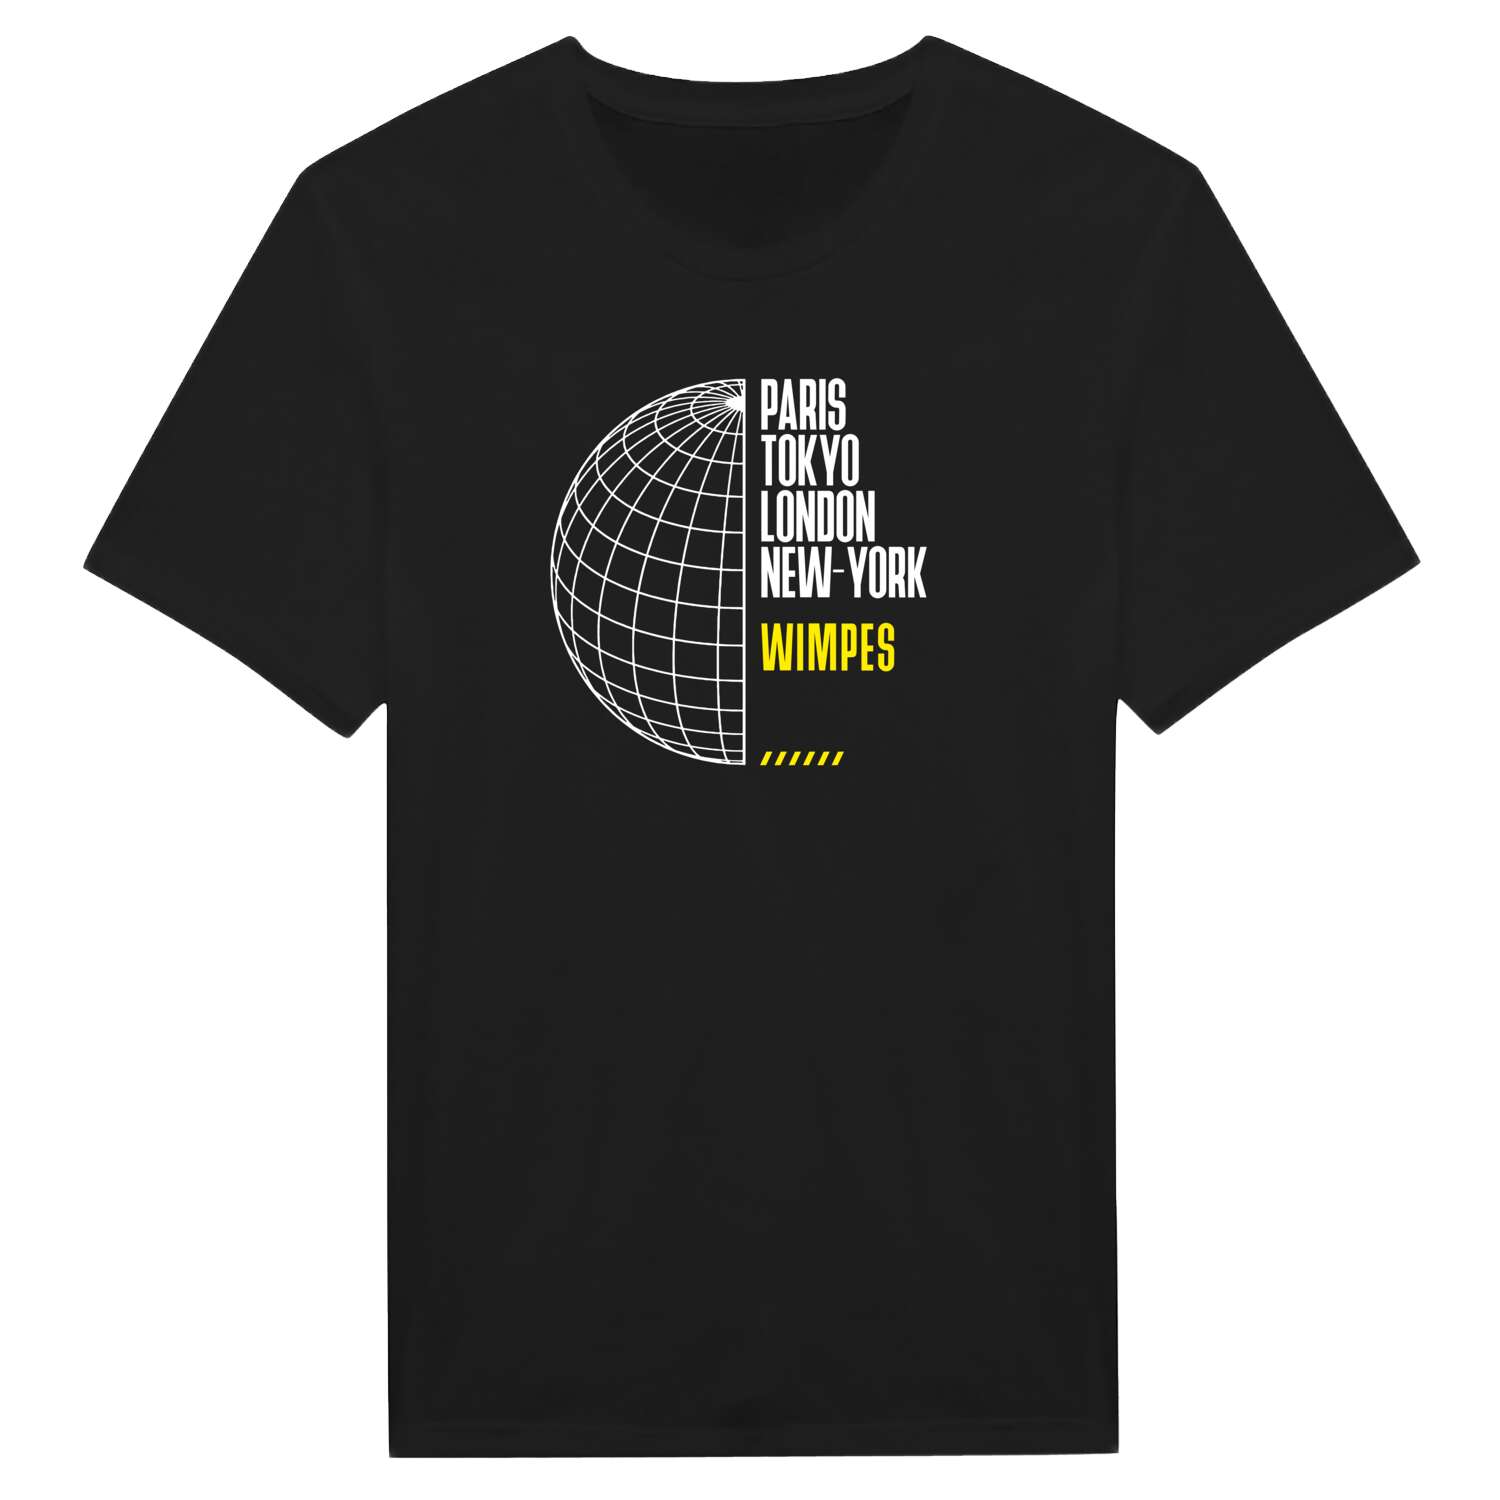 Wimpes T-Shirt »Paris Tokyo London«